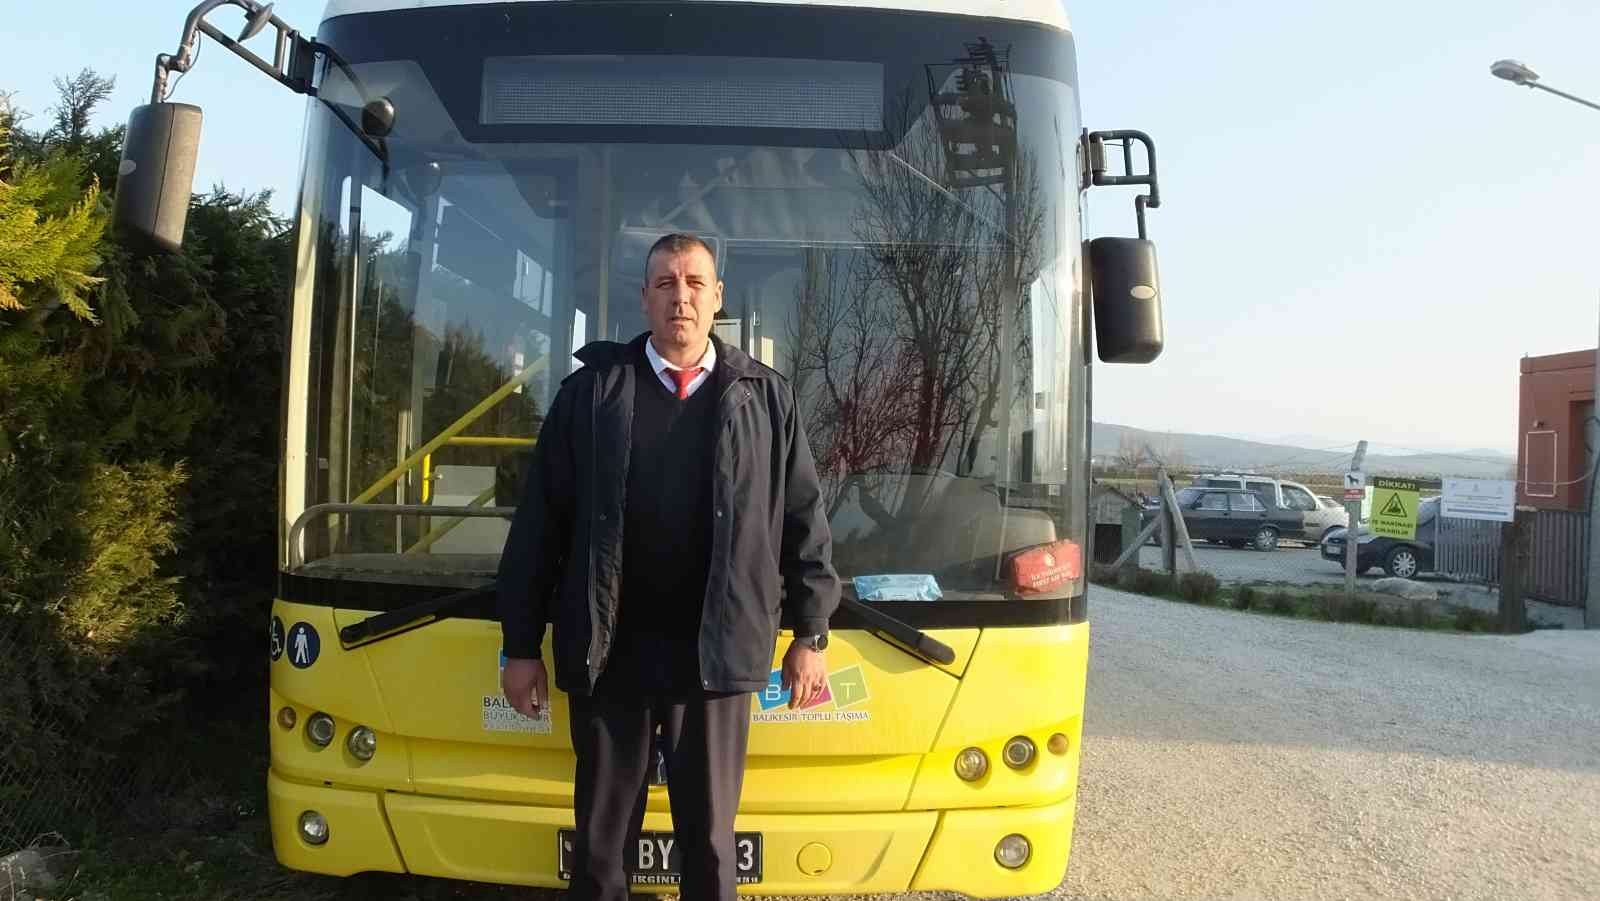 Balıkesir’in Burhaniye ilçesinde, 9 hatta yolcu taşımacılığı yapan Balıkesir Büyükşehir Belediyesi, eğitime de destek verdi. Okul gezilerine ...